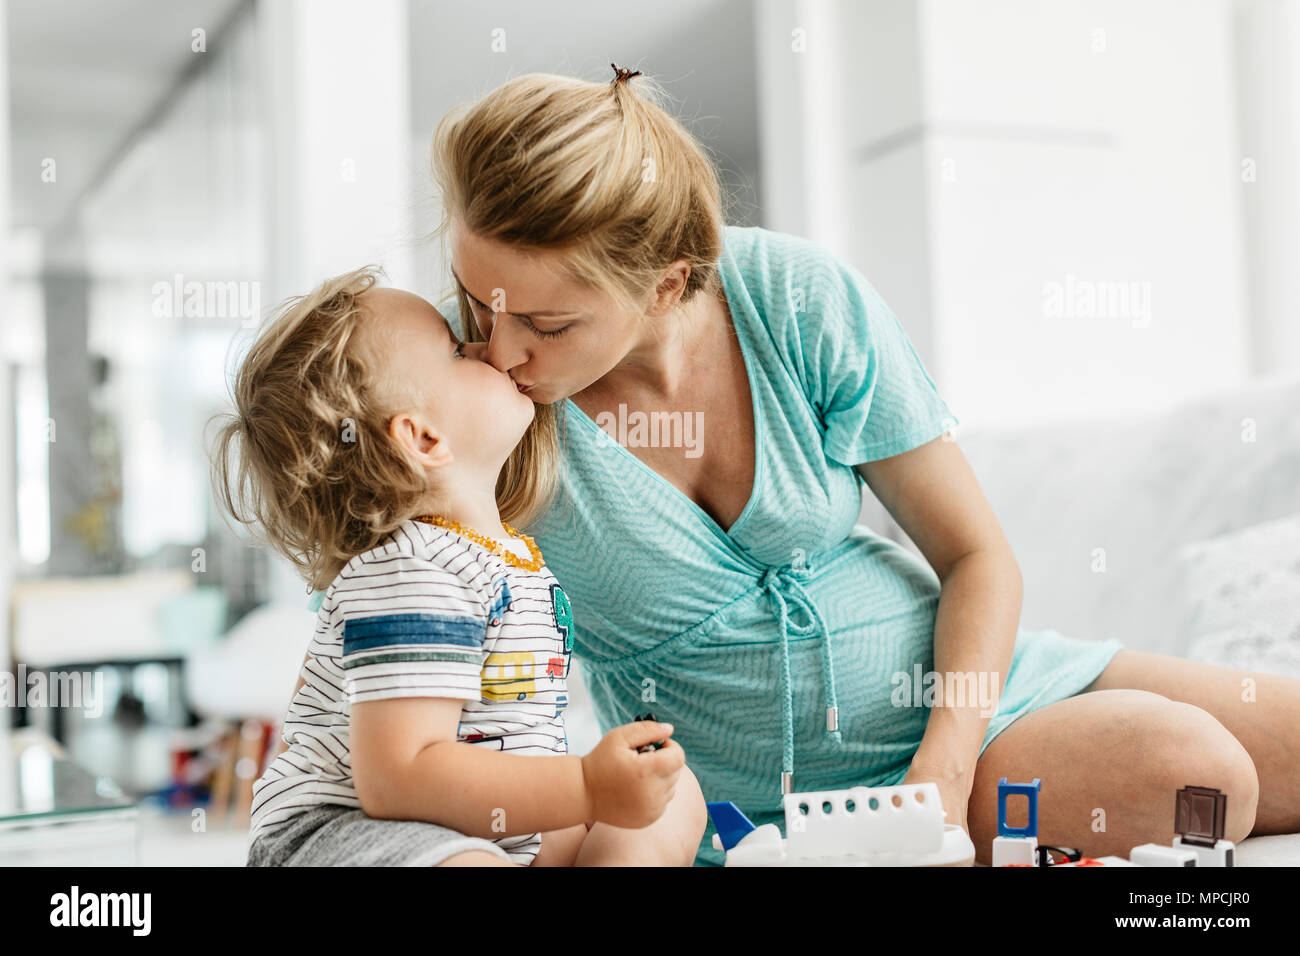 Der Mutter und dem Kind zu küssen. Ein Porträt einer schwangeren Frau mit ihr spielen Toddlersohn und zärtliche Momente. Stockfoto